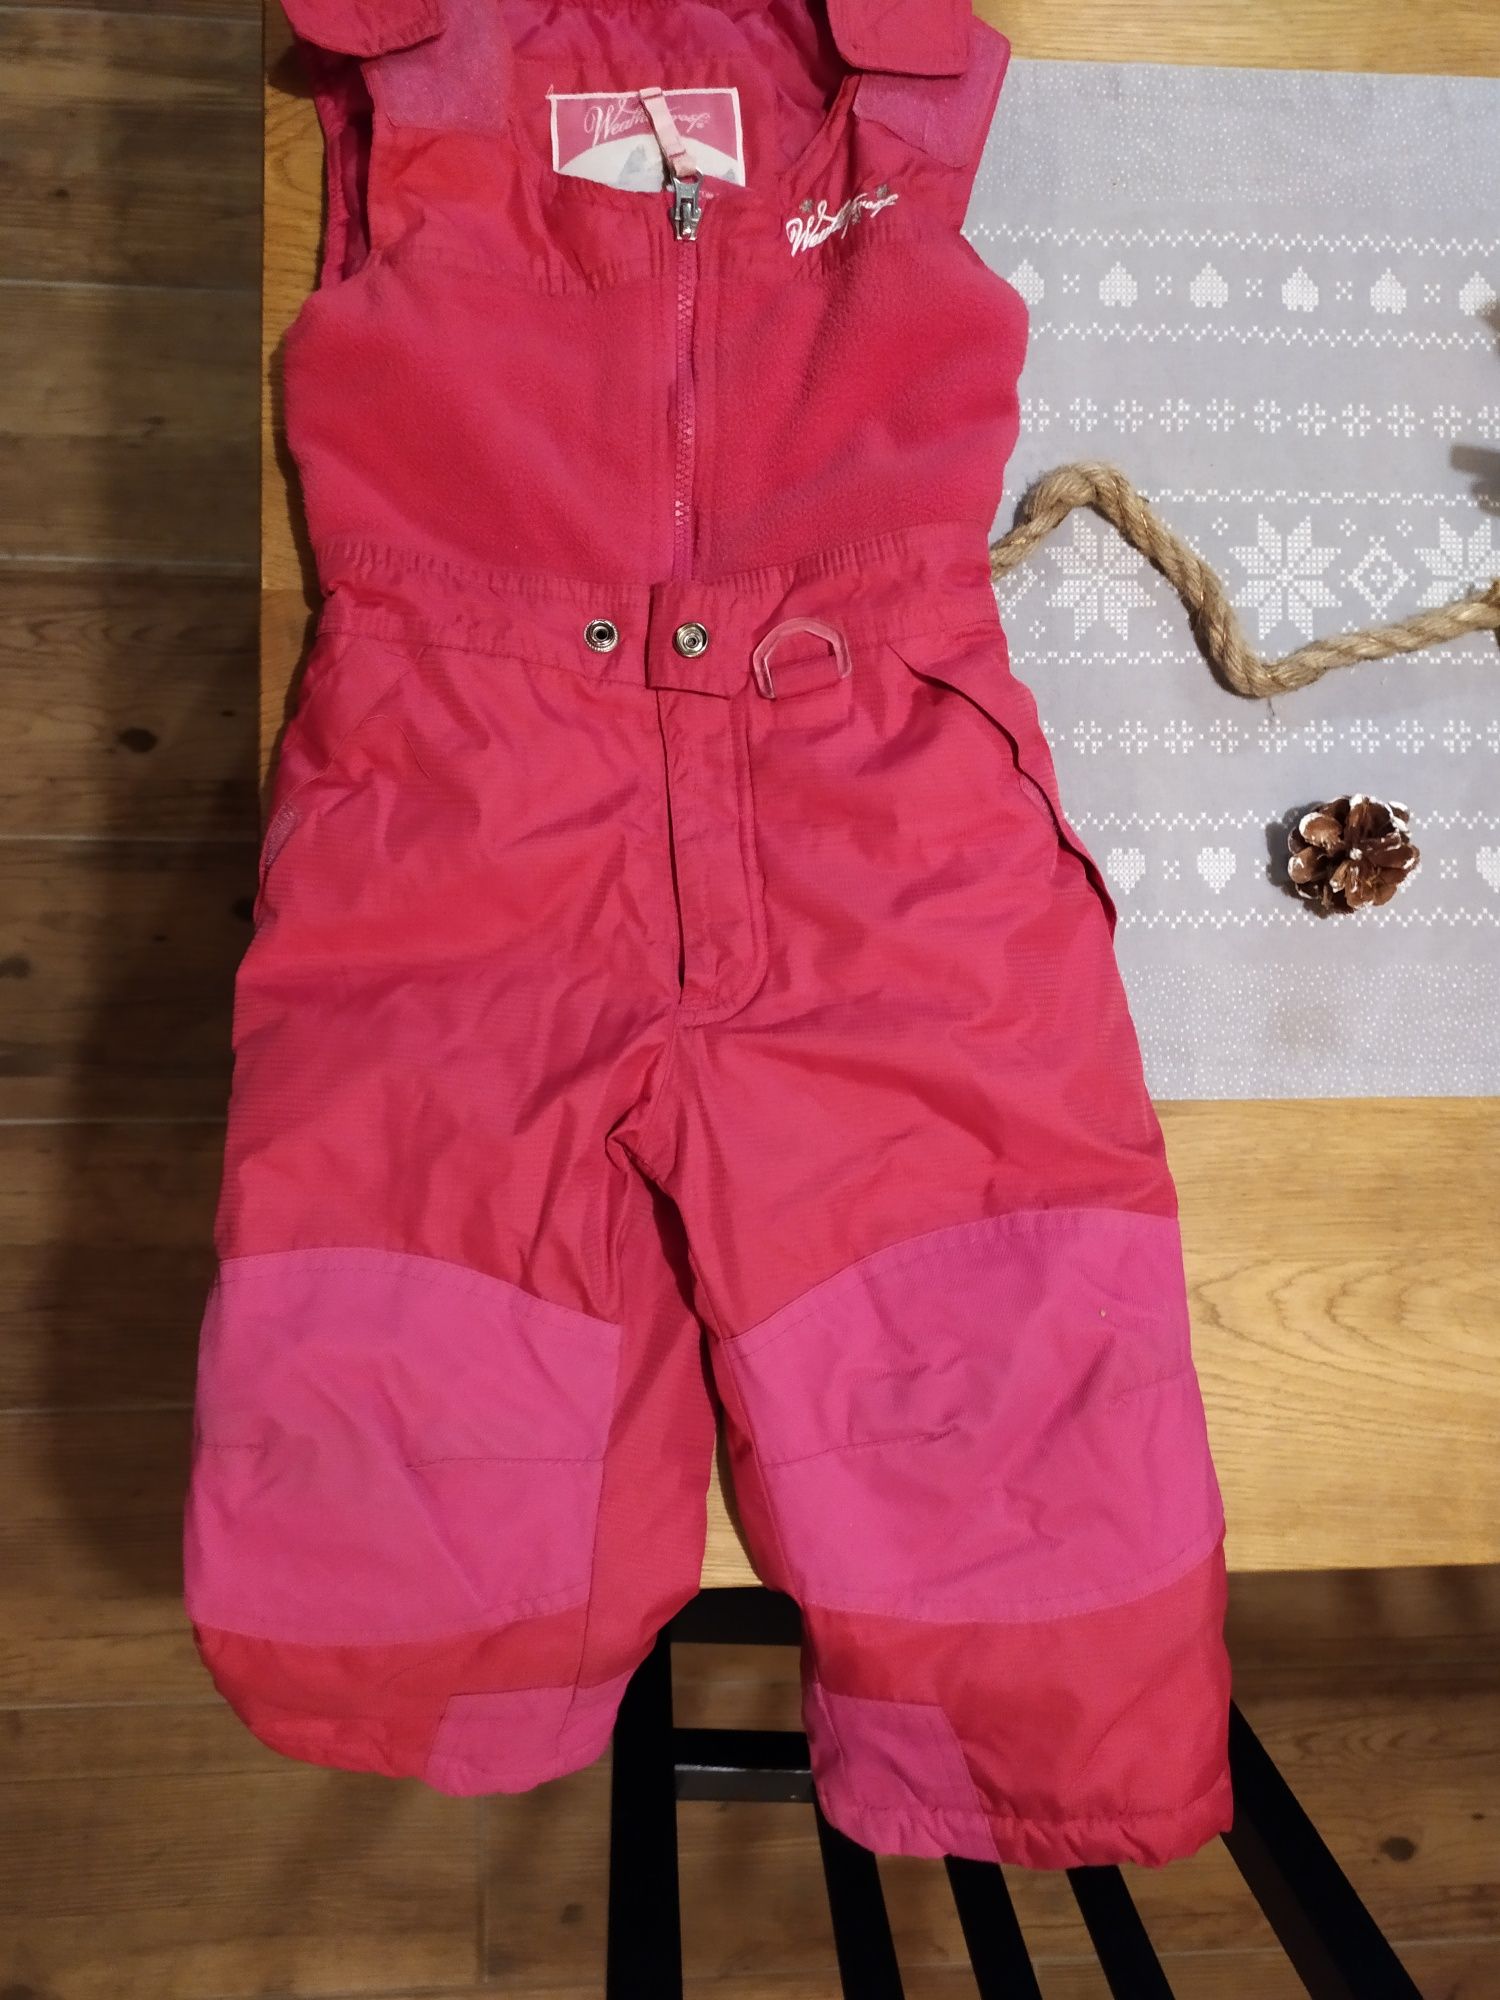 Spodnie zimowe dla dziewczynki w wieku okolo 2 lat